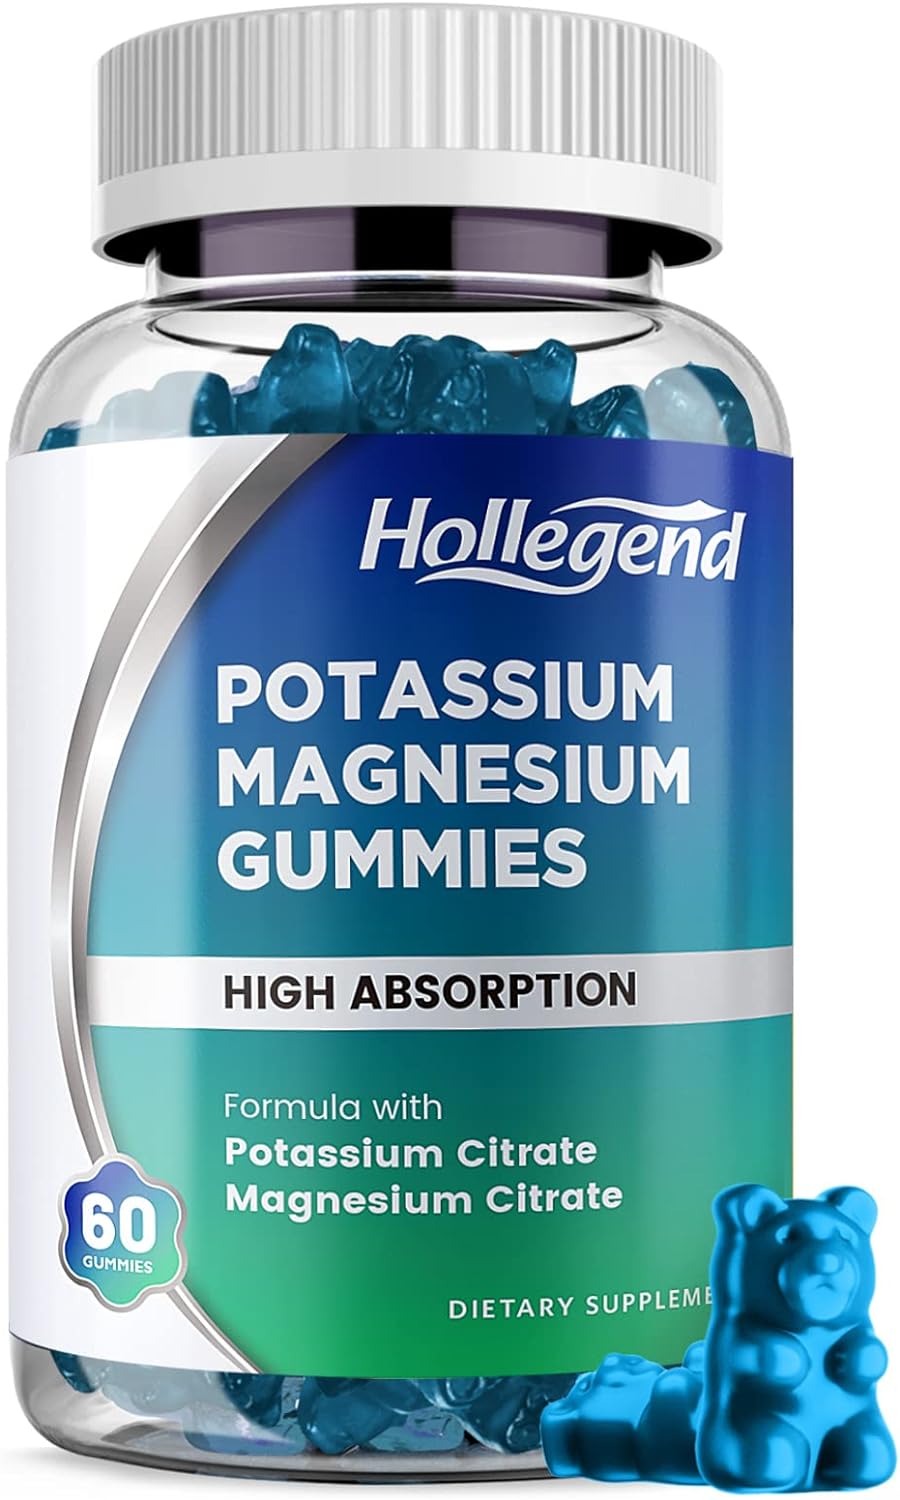 Potassium Magnesium Gummies Review